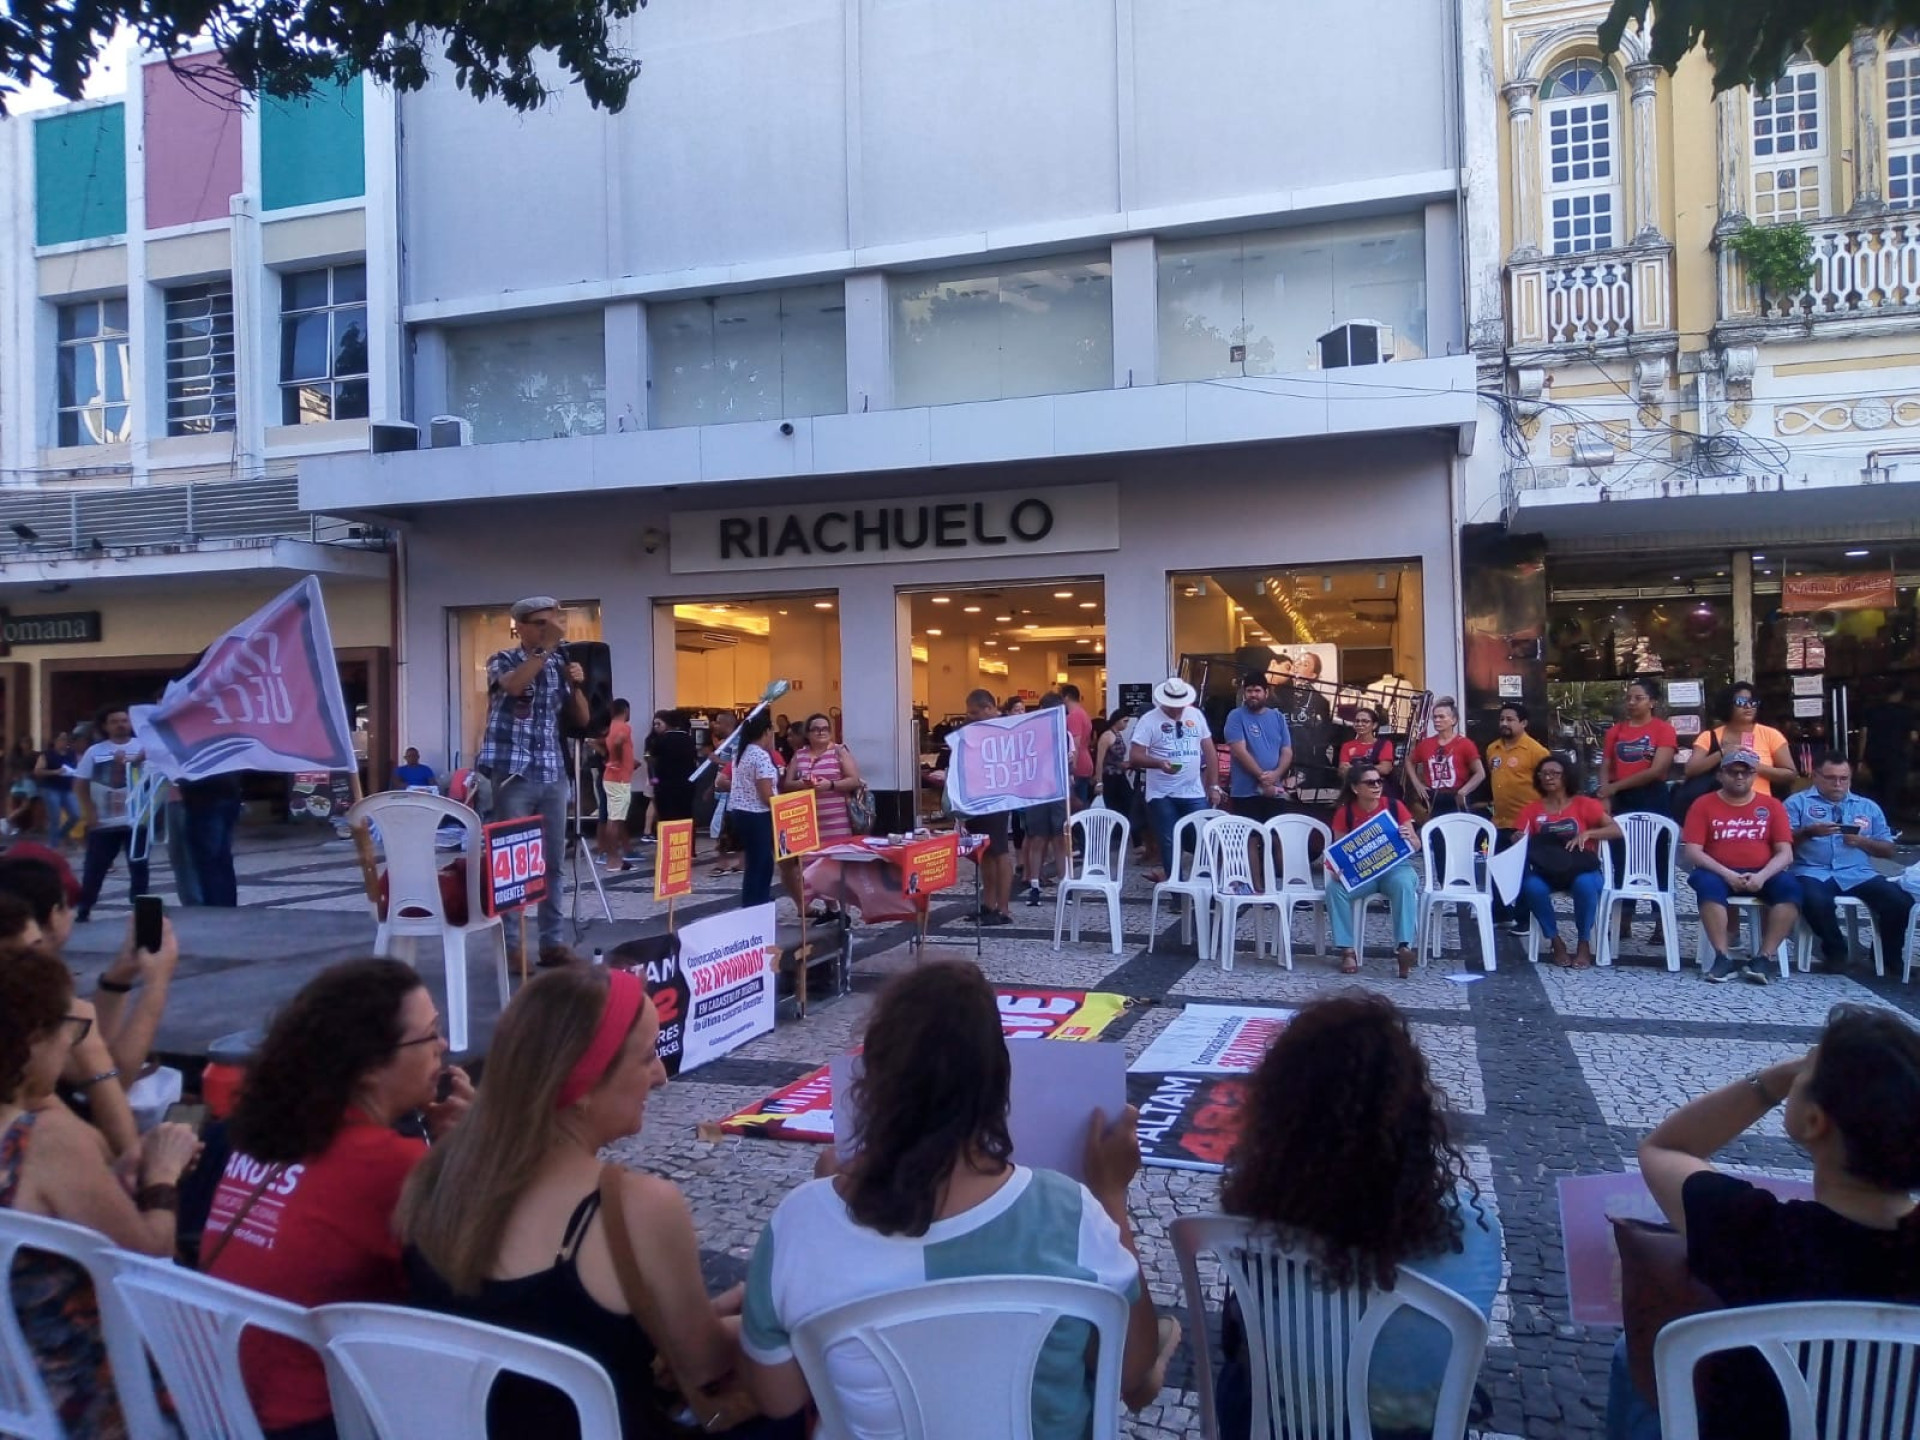 Docentes da Uece realizam ato na Praça do Ferreira (Foto: Jornal O POVO)